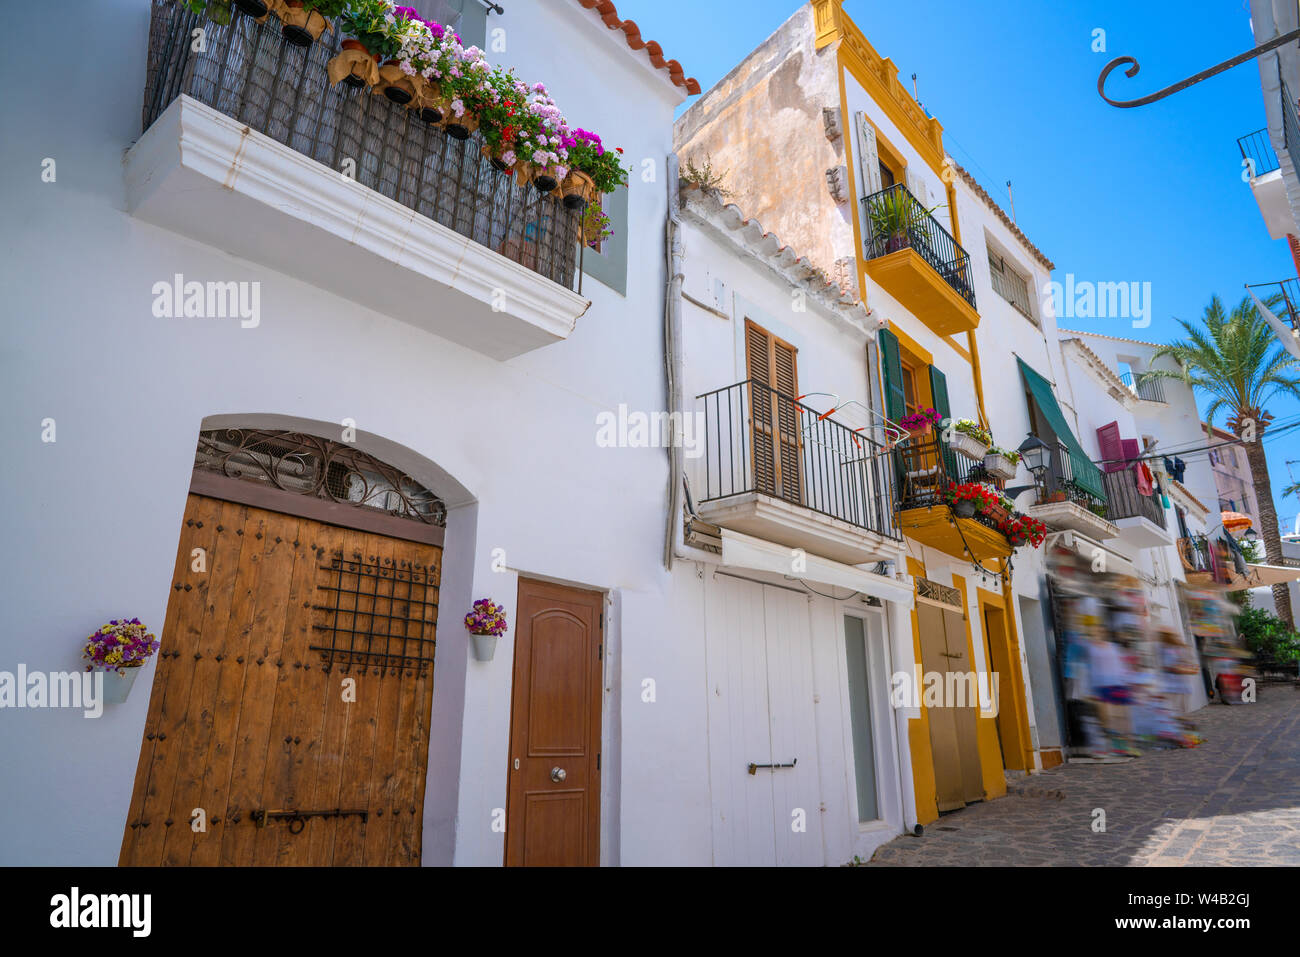 El centro de Ibiza Eivissa Dalt Vila fachadas en las Islas Baleares Foto de stock